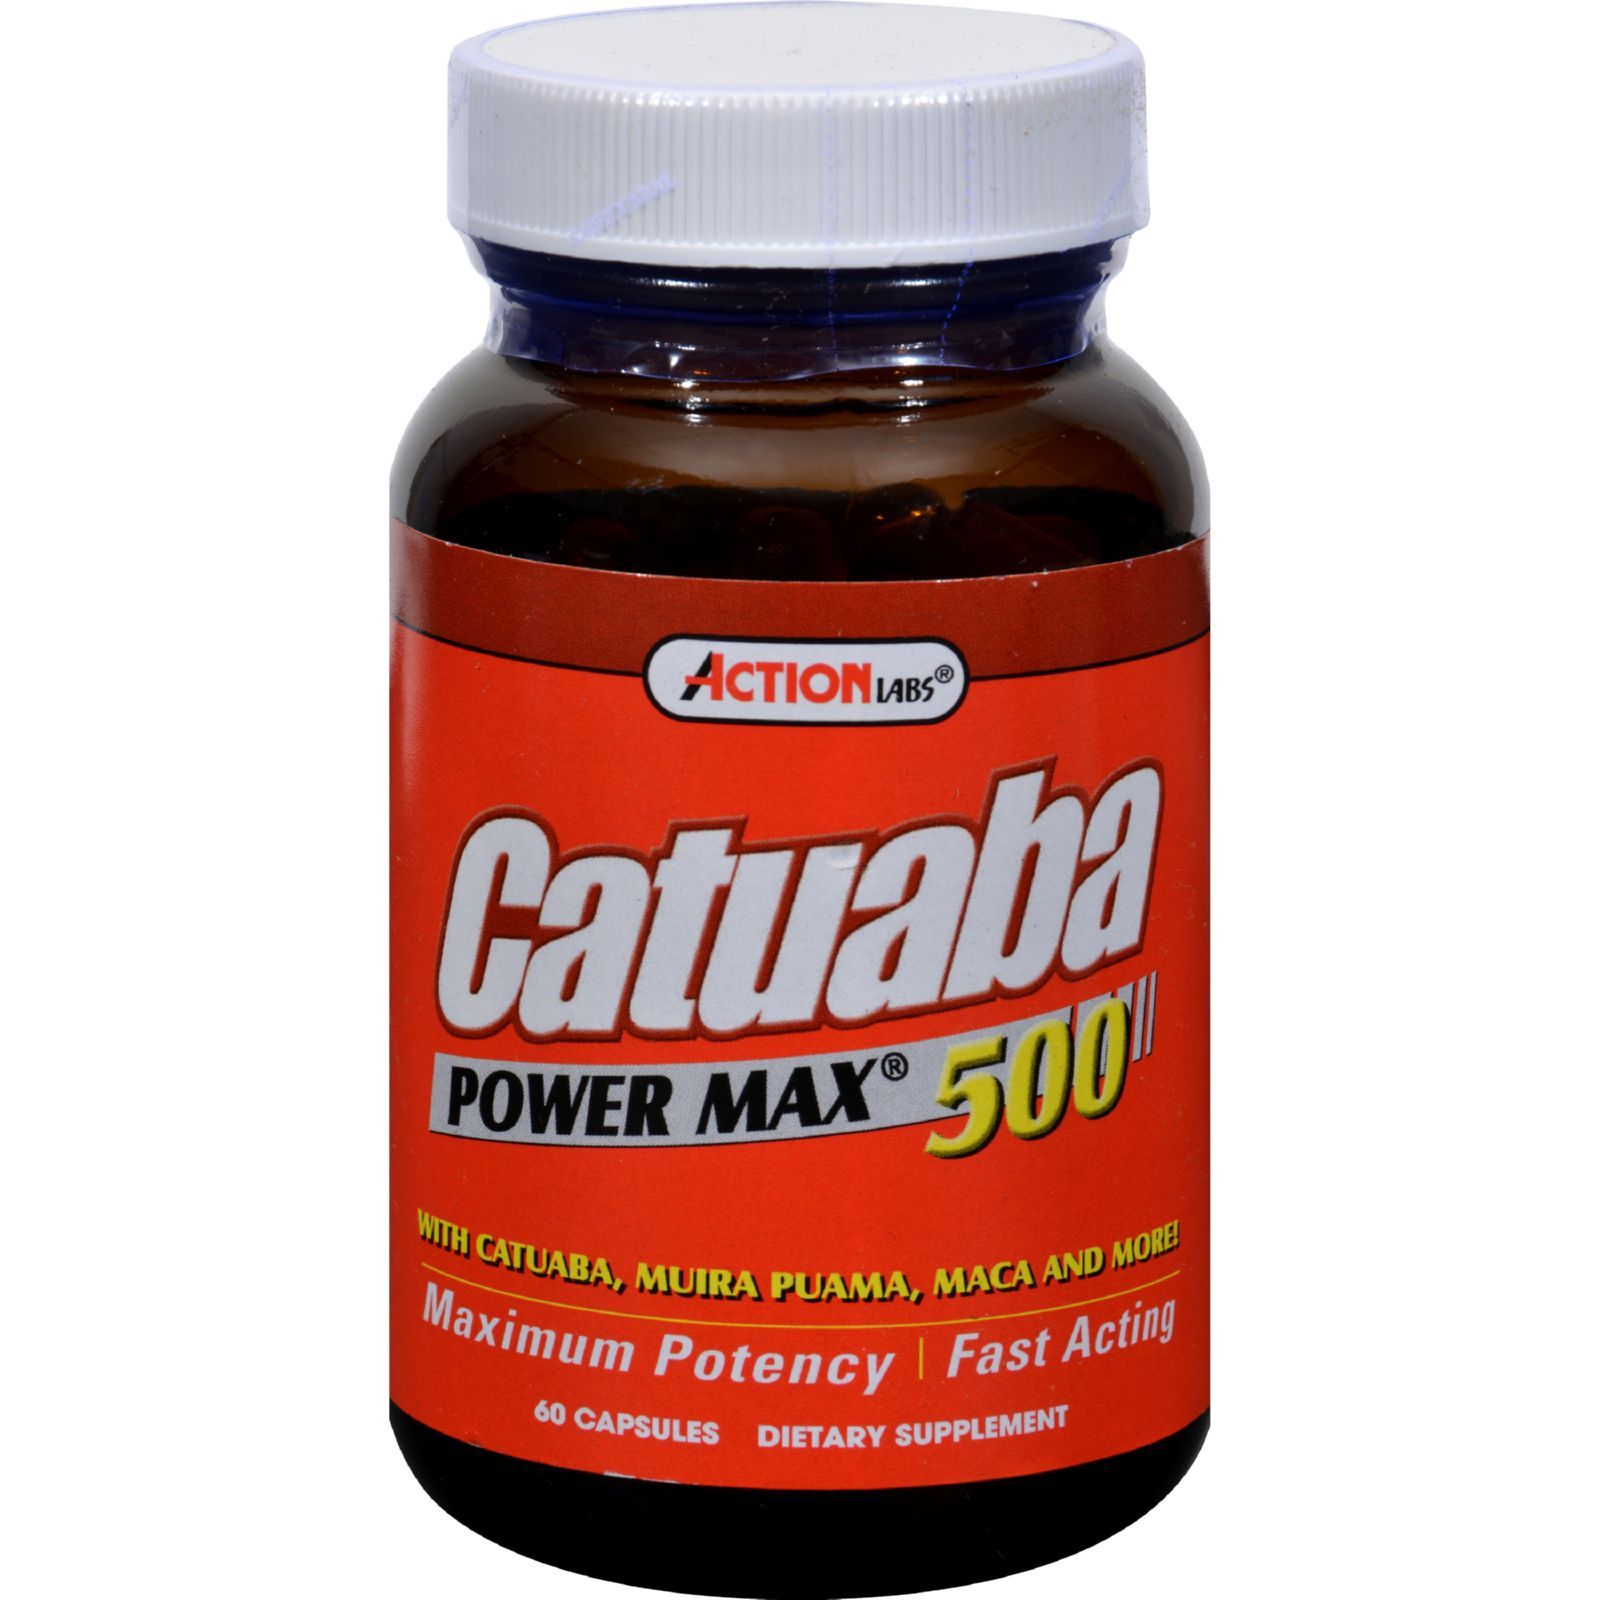 Benefits of Catuba Supplements